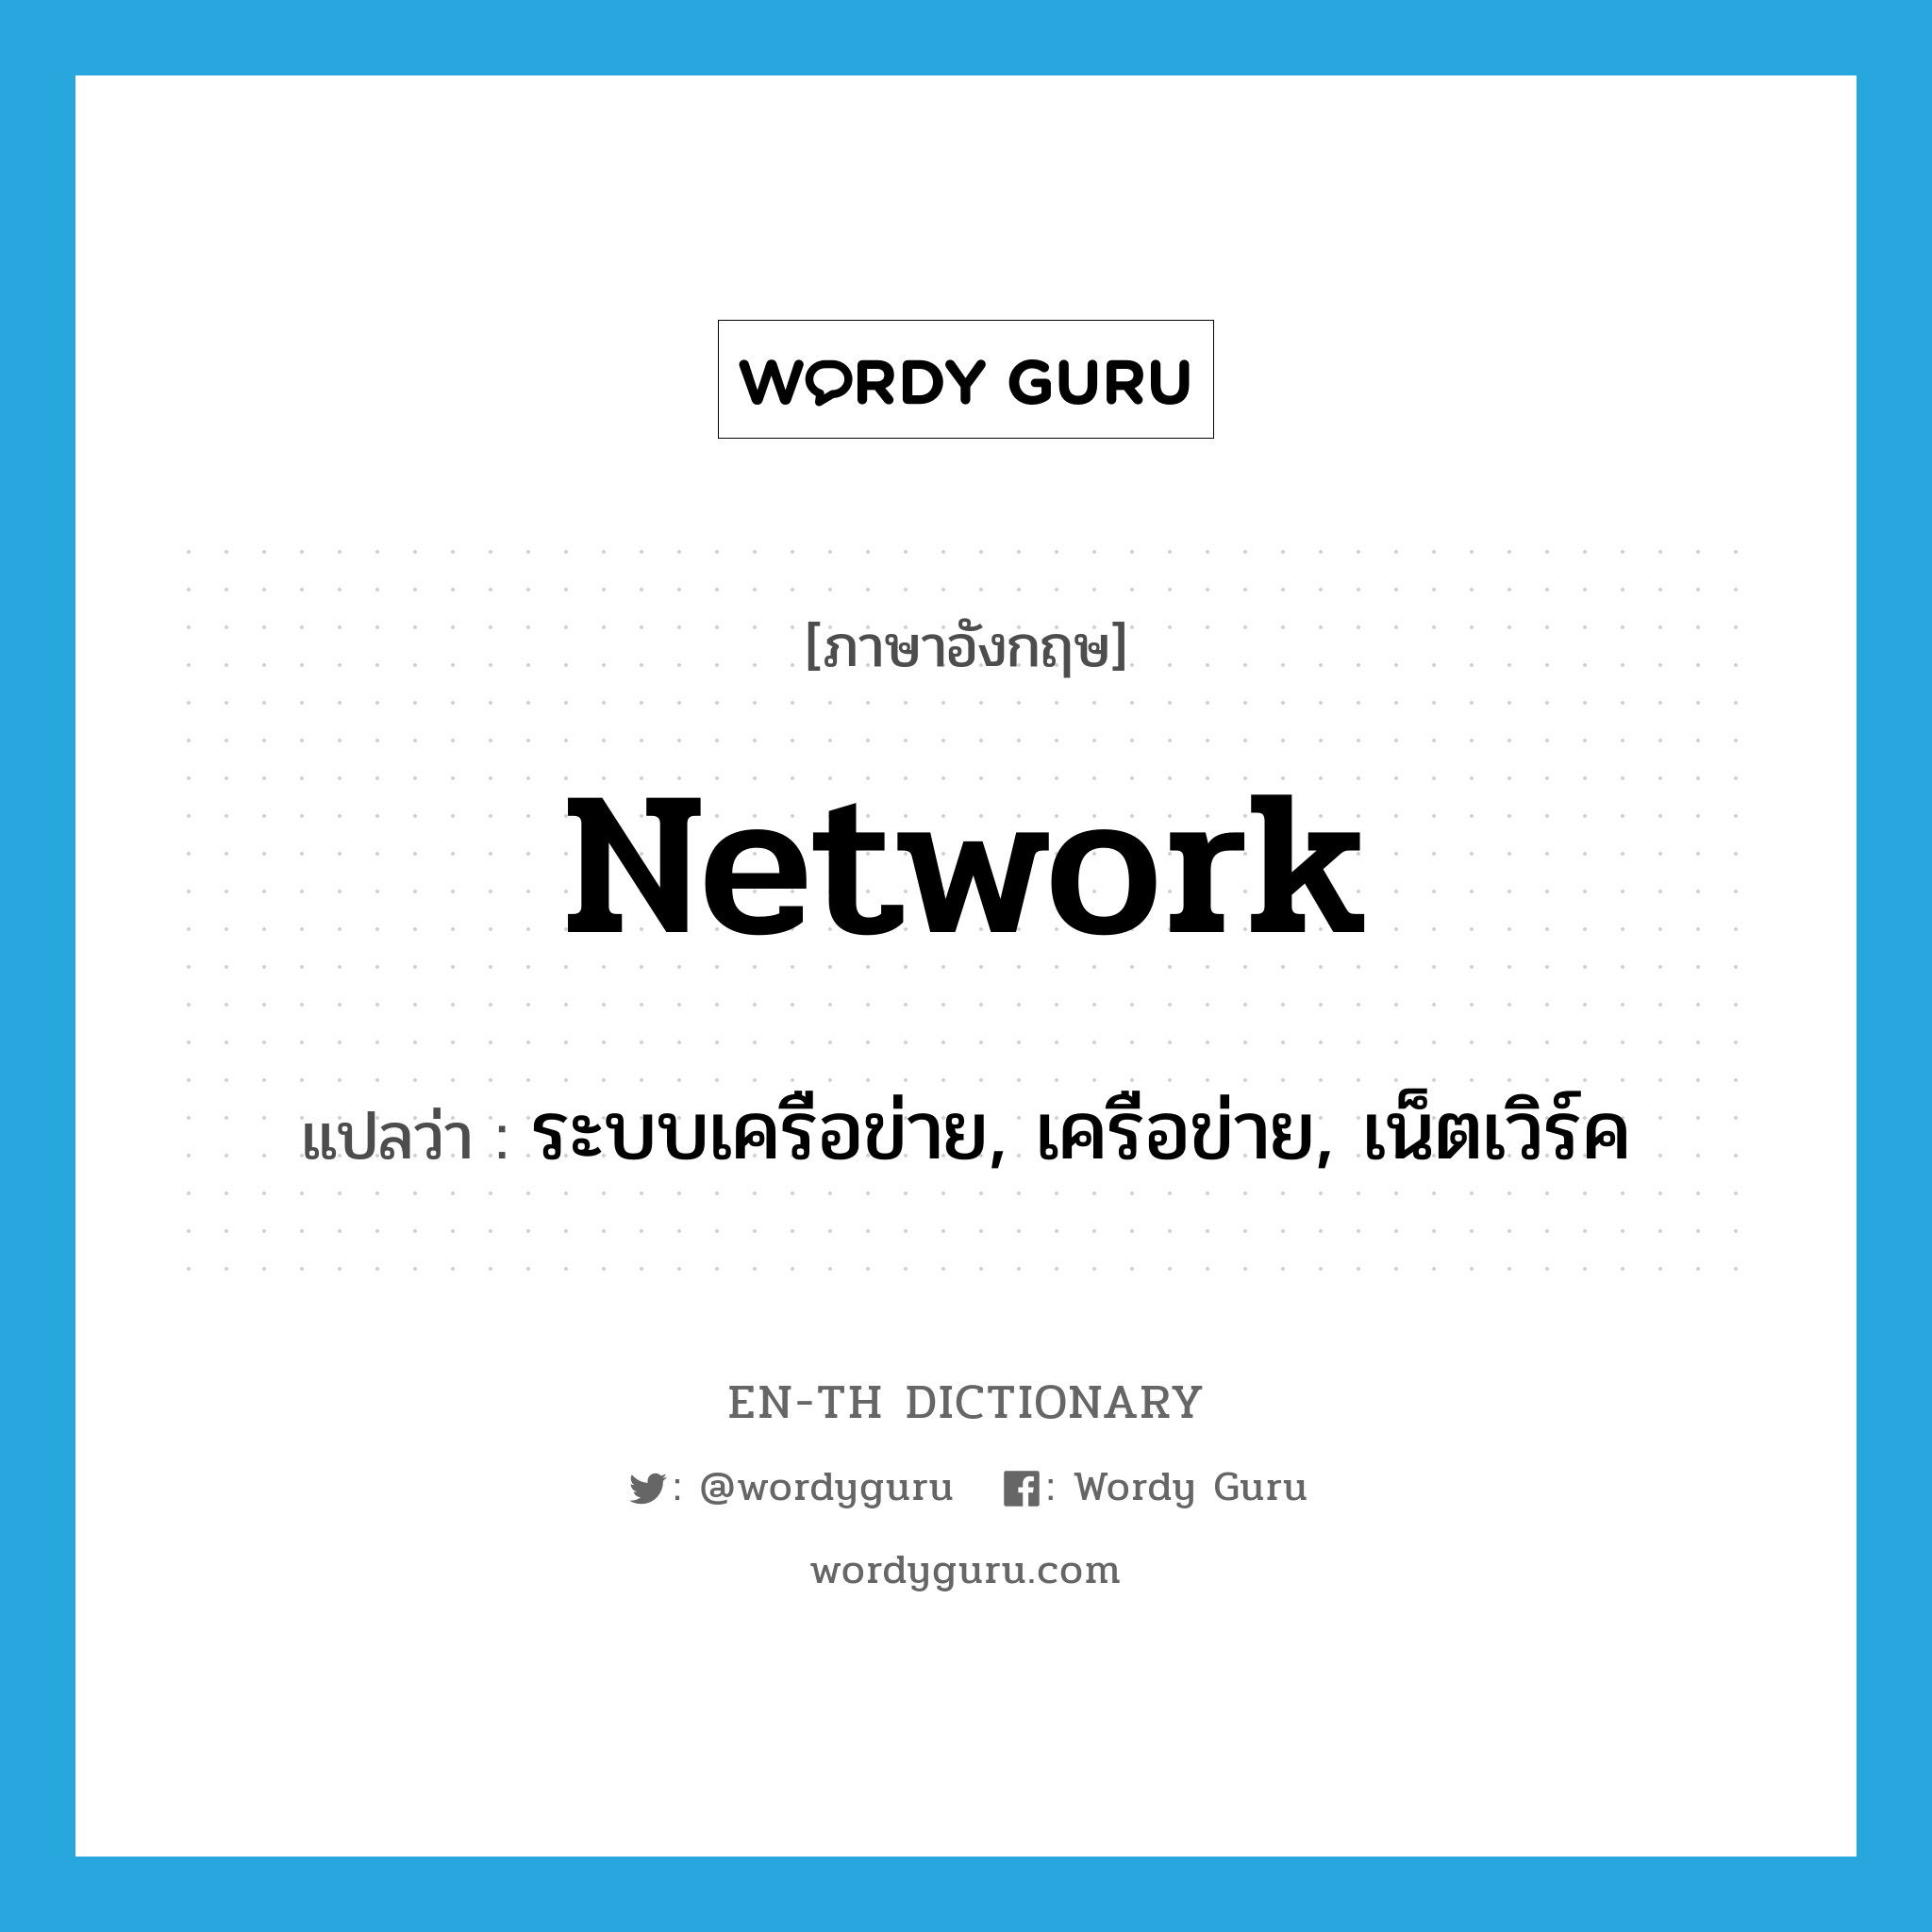 network แปลว่า?, คำศัพท์ภาษาอังกฤษ network แปลว่า ระบบเครือข่าย, เครือข่าย, เน็ตเวิร์ค ประเภท N หมวด N